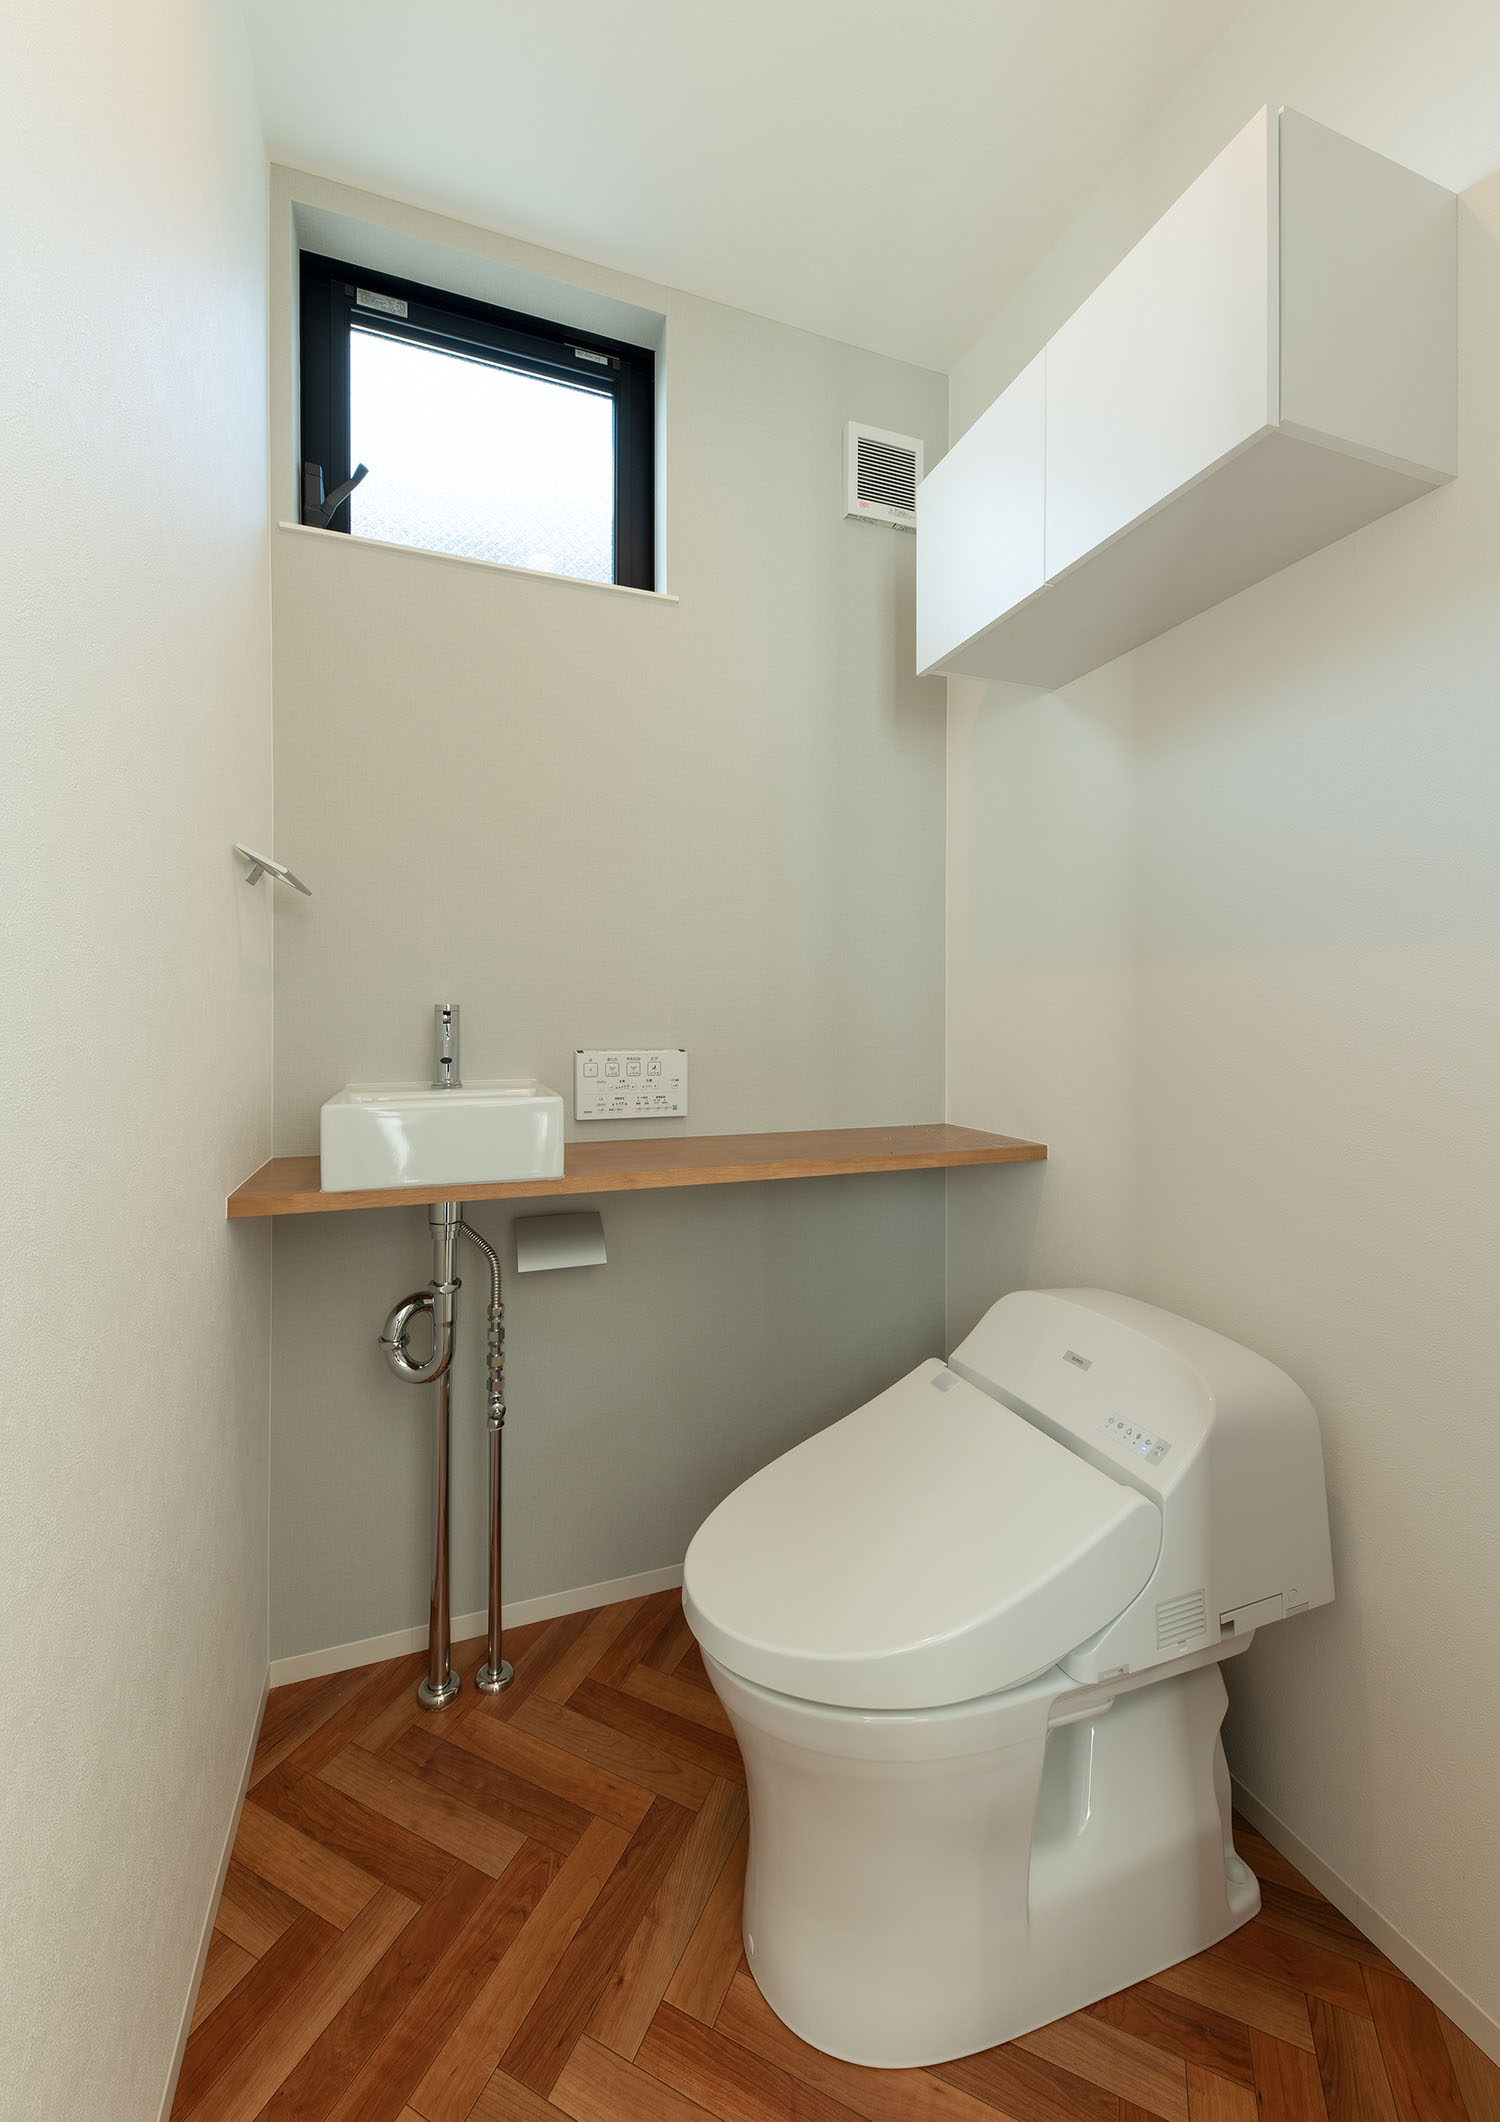 薄型手洗いと収納があるヘリンボーン柄の床のトイレ・デザイン住宅